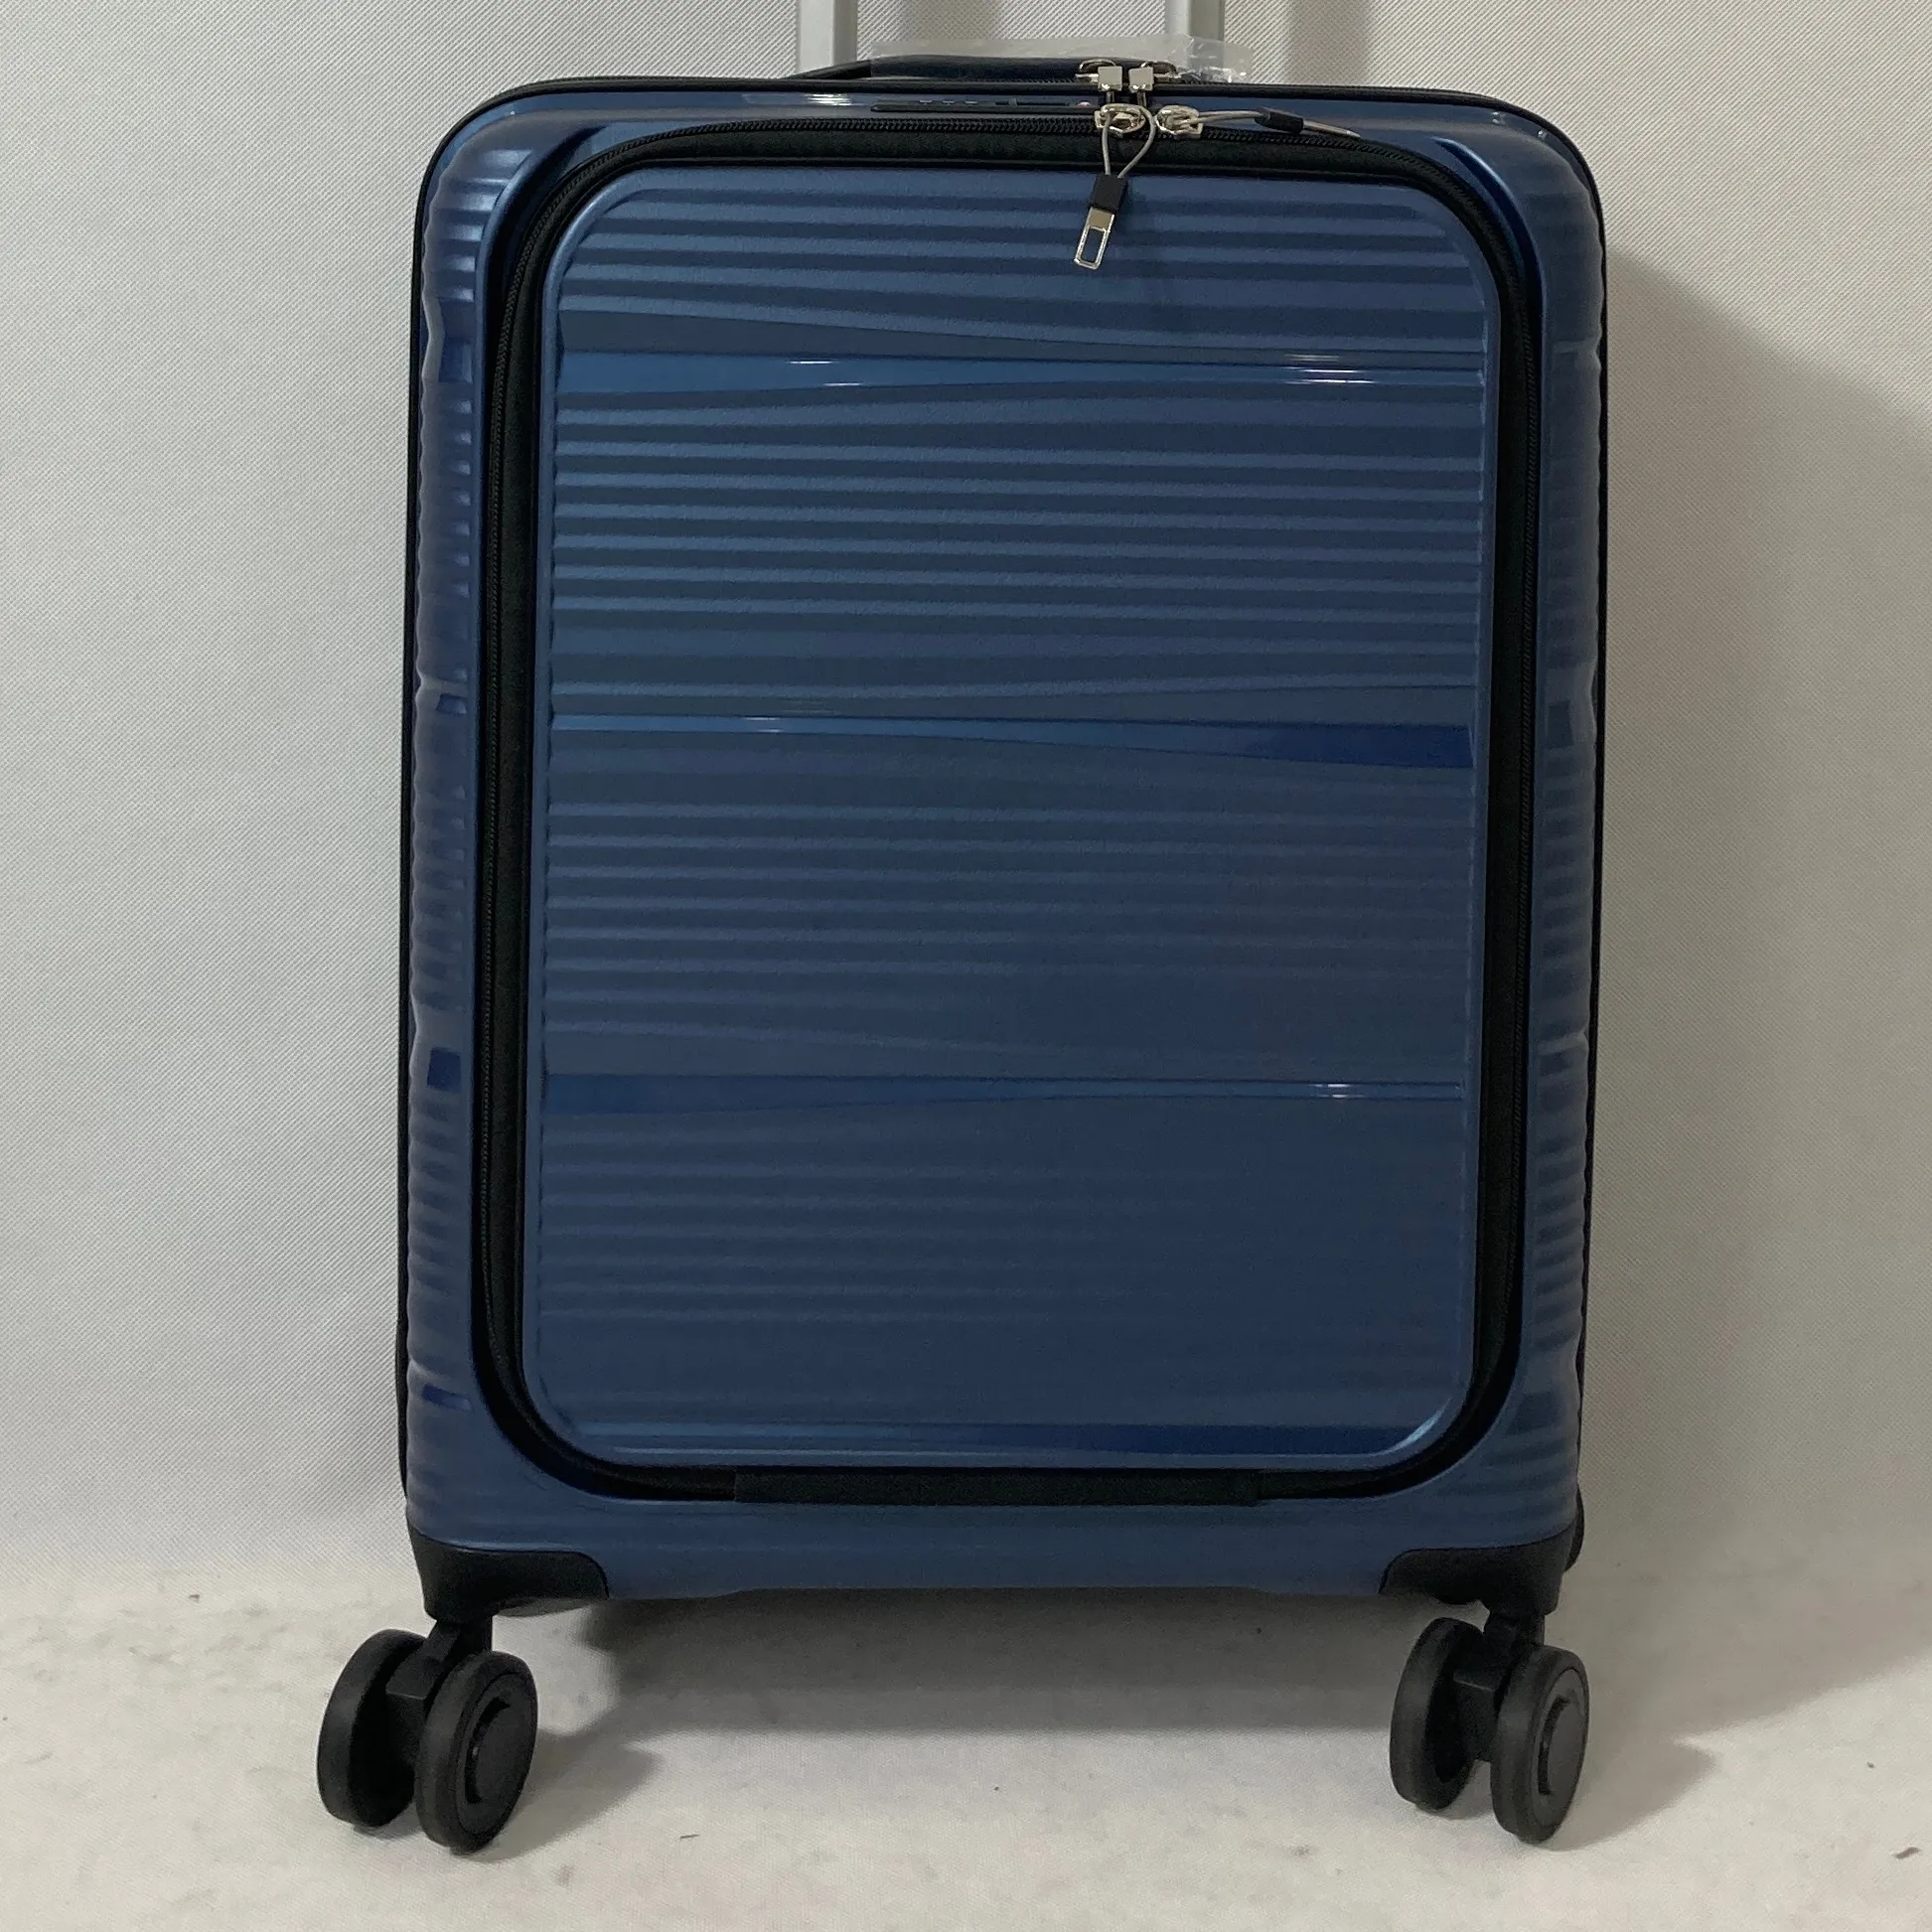 20 inhch tasca anteriore con cerniera valigie valigie in polipropilene valigia cabina morbida borsa tutto in alluminio